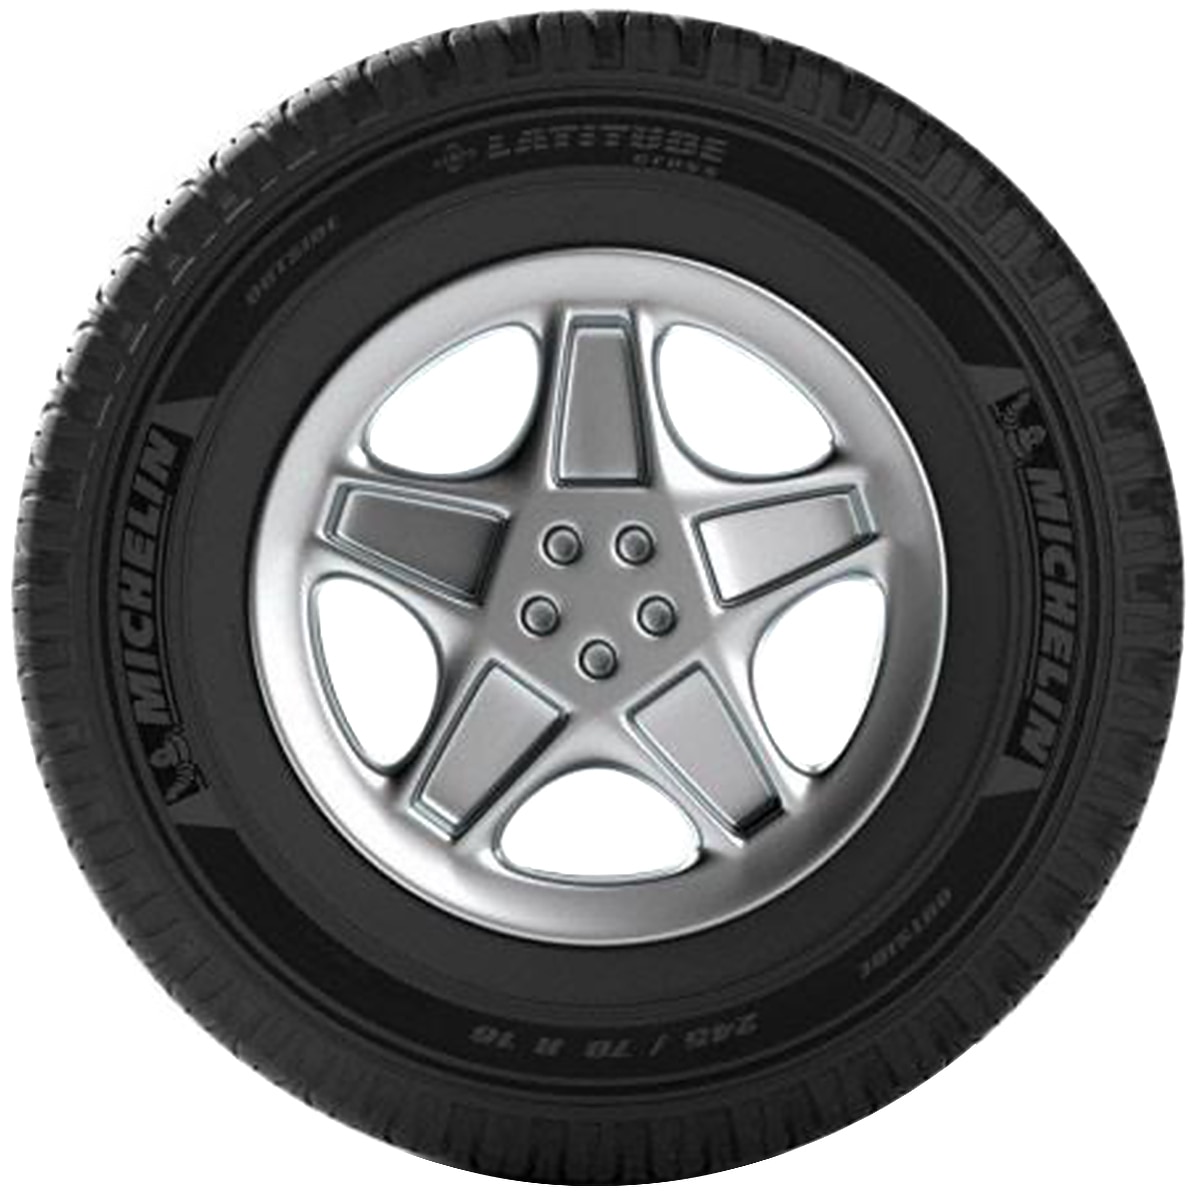 245/60R18 105V LATITUDE  TOUR - Tyre